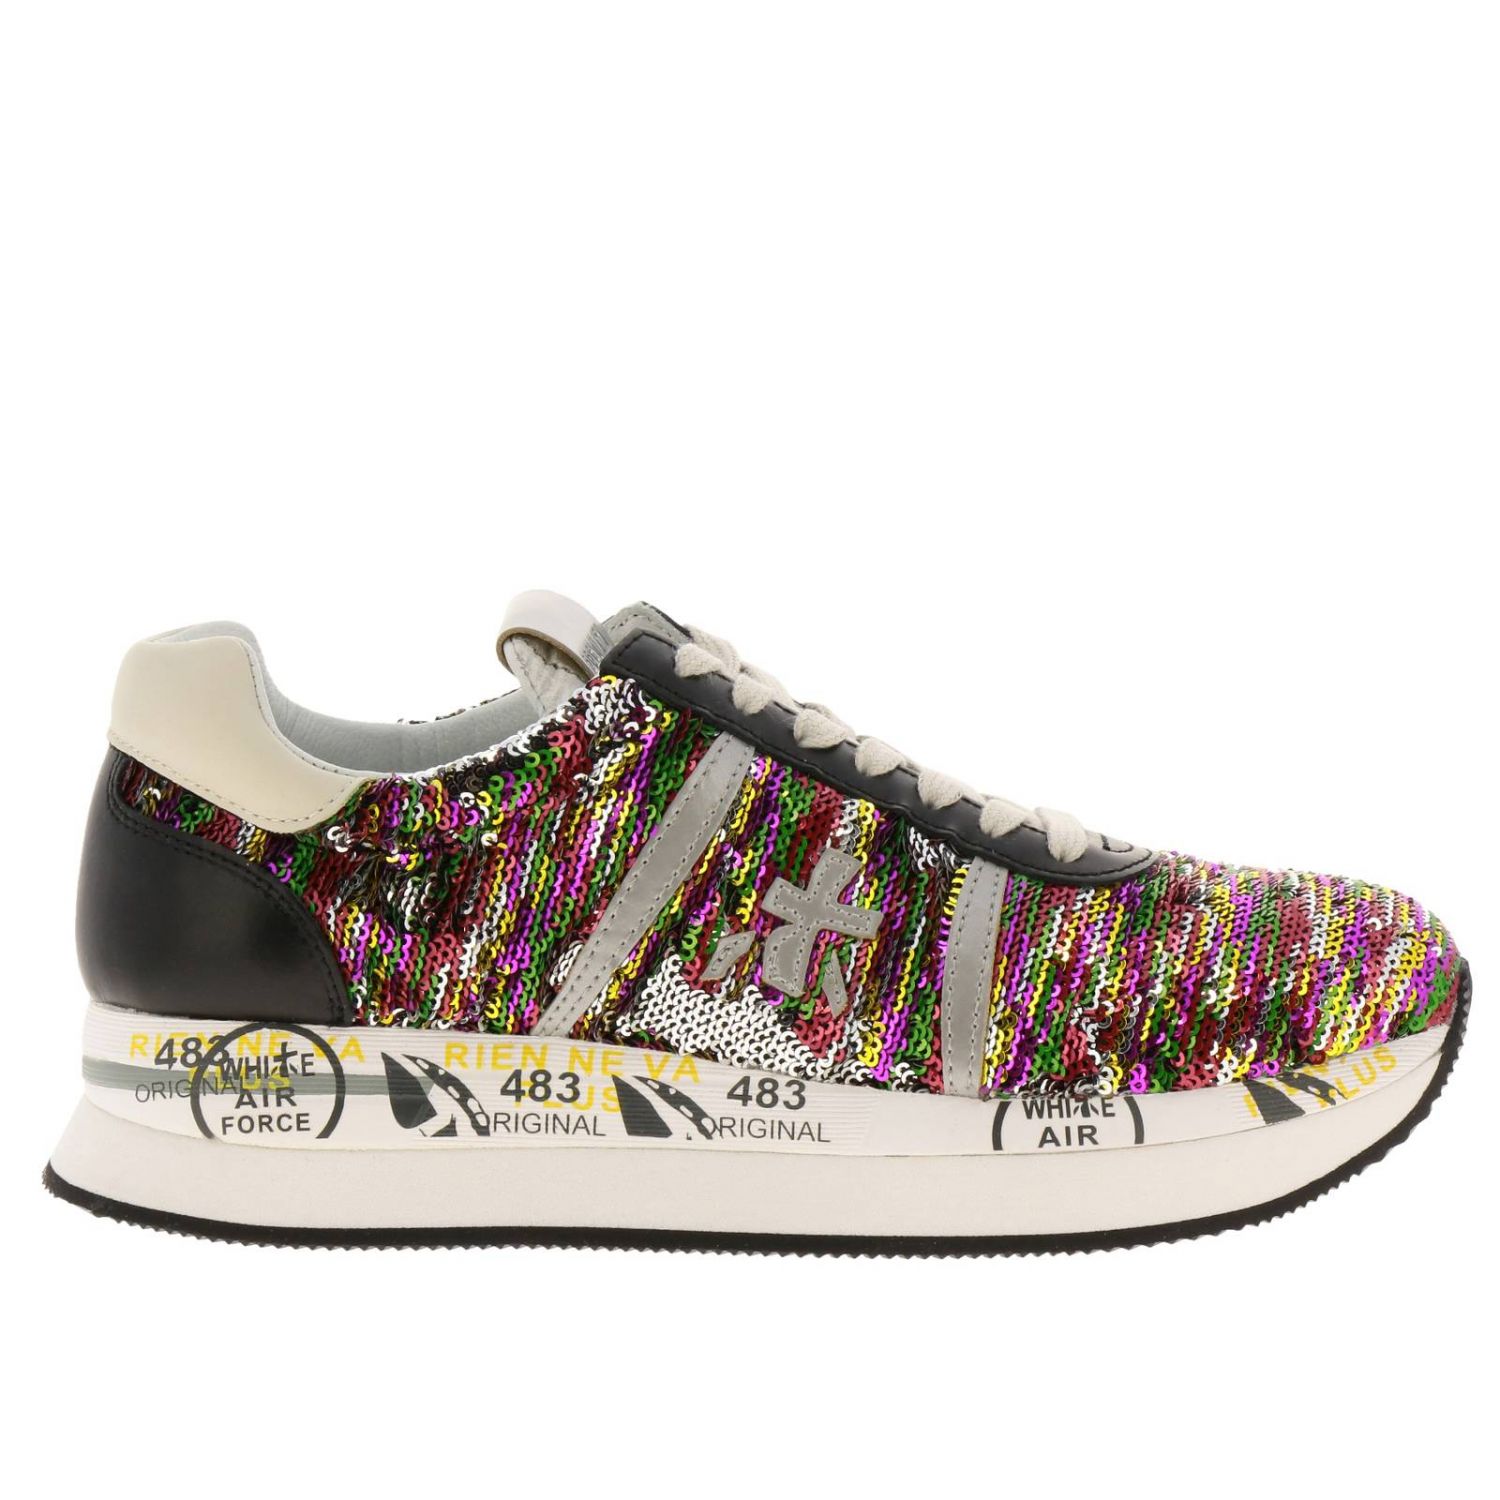 Sneakers Conny in tessuto e glitter Giglio.com Donna Scarpe Sneakers Sneakers con glitter 